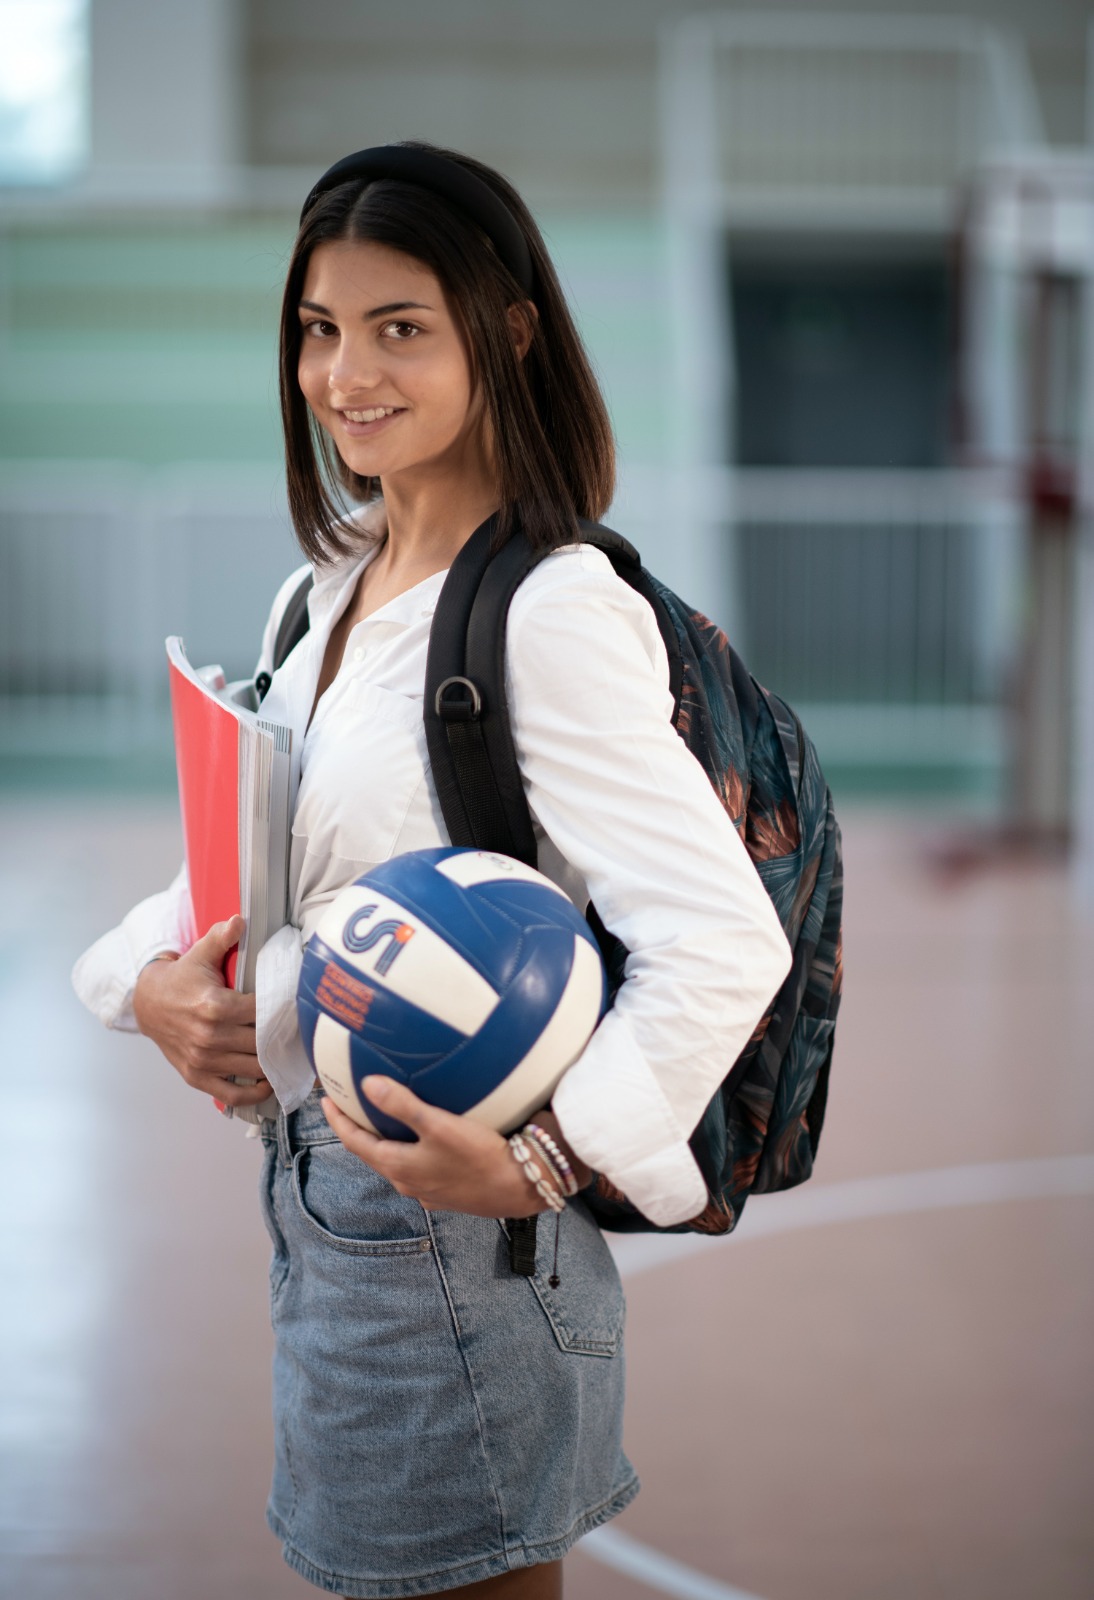 Una ragazza con uno zaino sulle spalle, in mano un quaderno e una palla da pallavolo